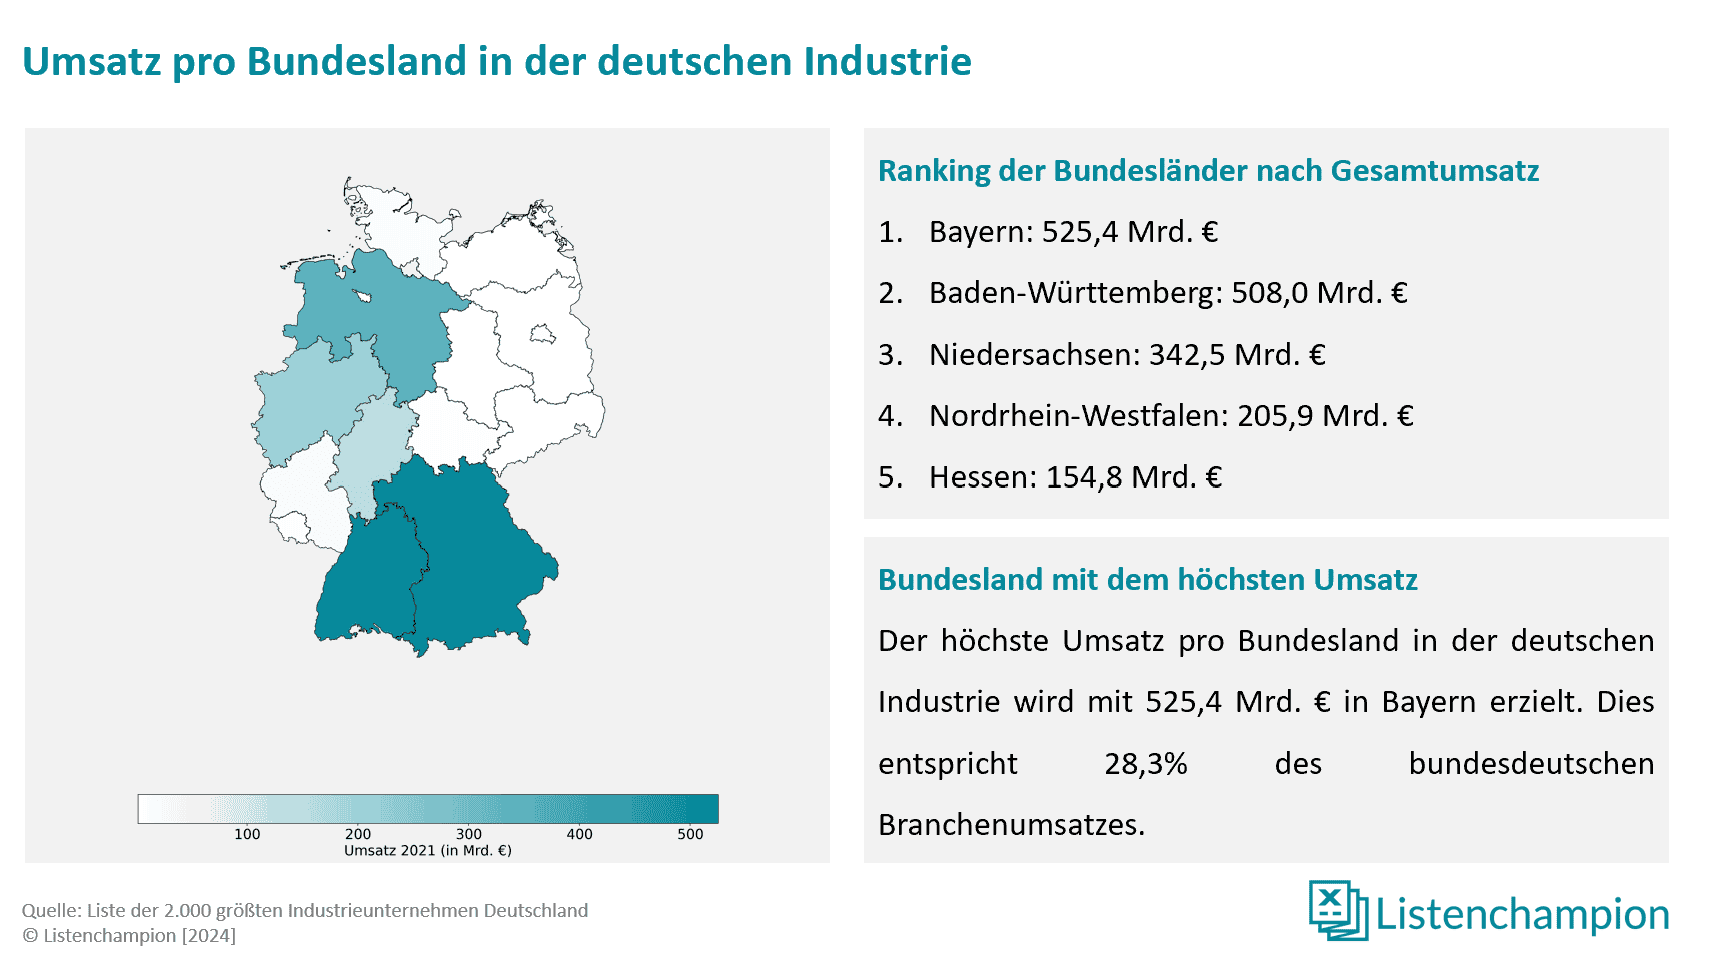 Umsätze der deutschen industrieunternehmen pro Bundesland